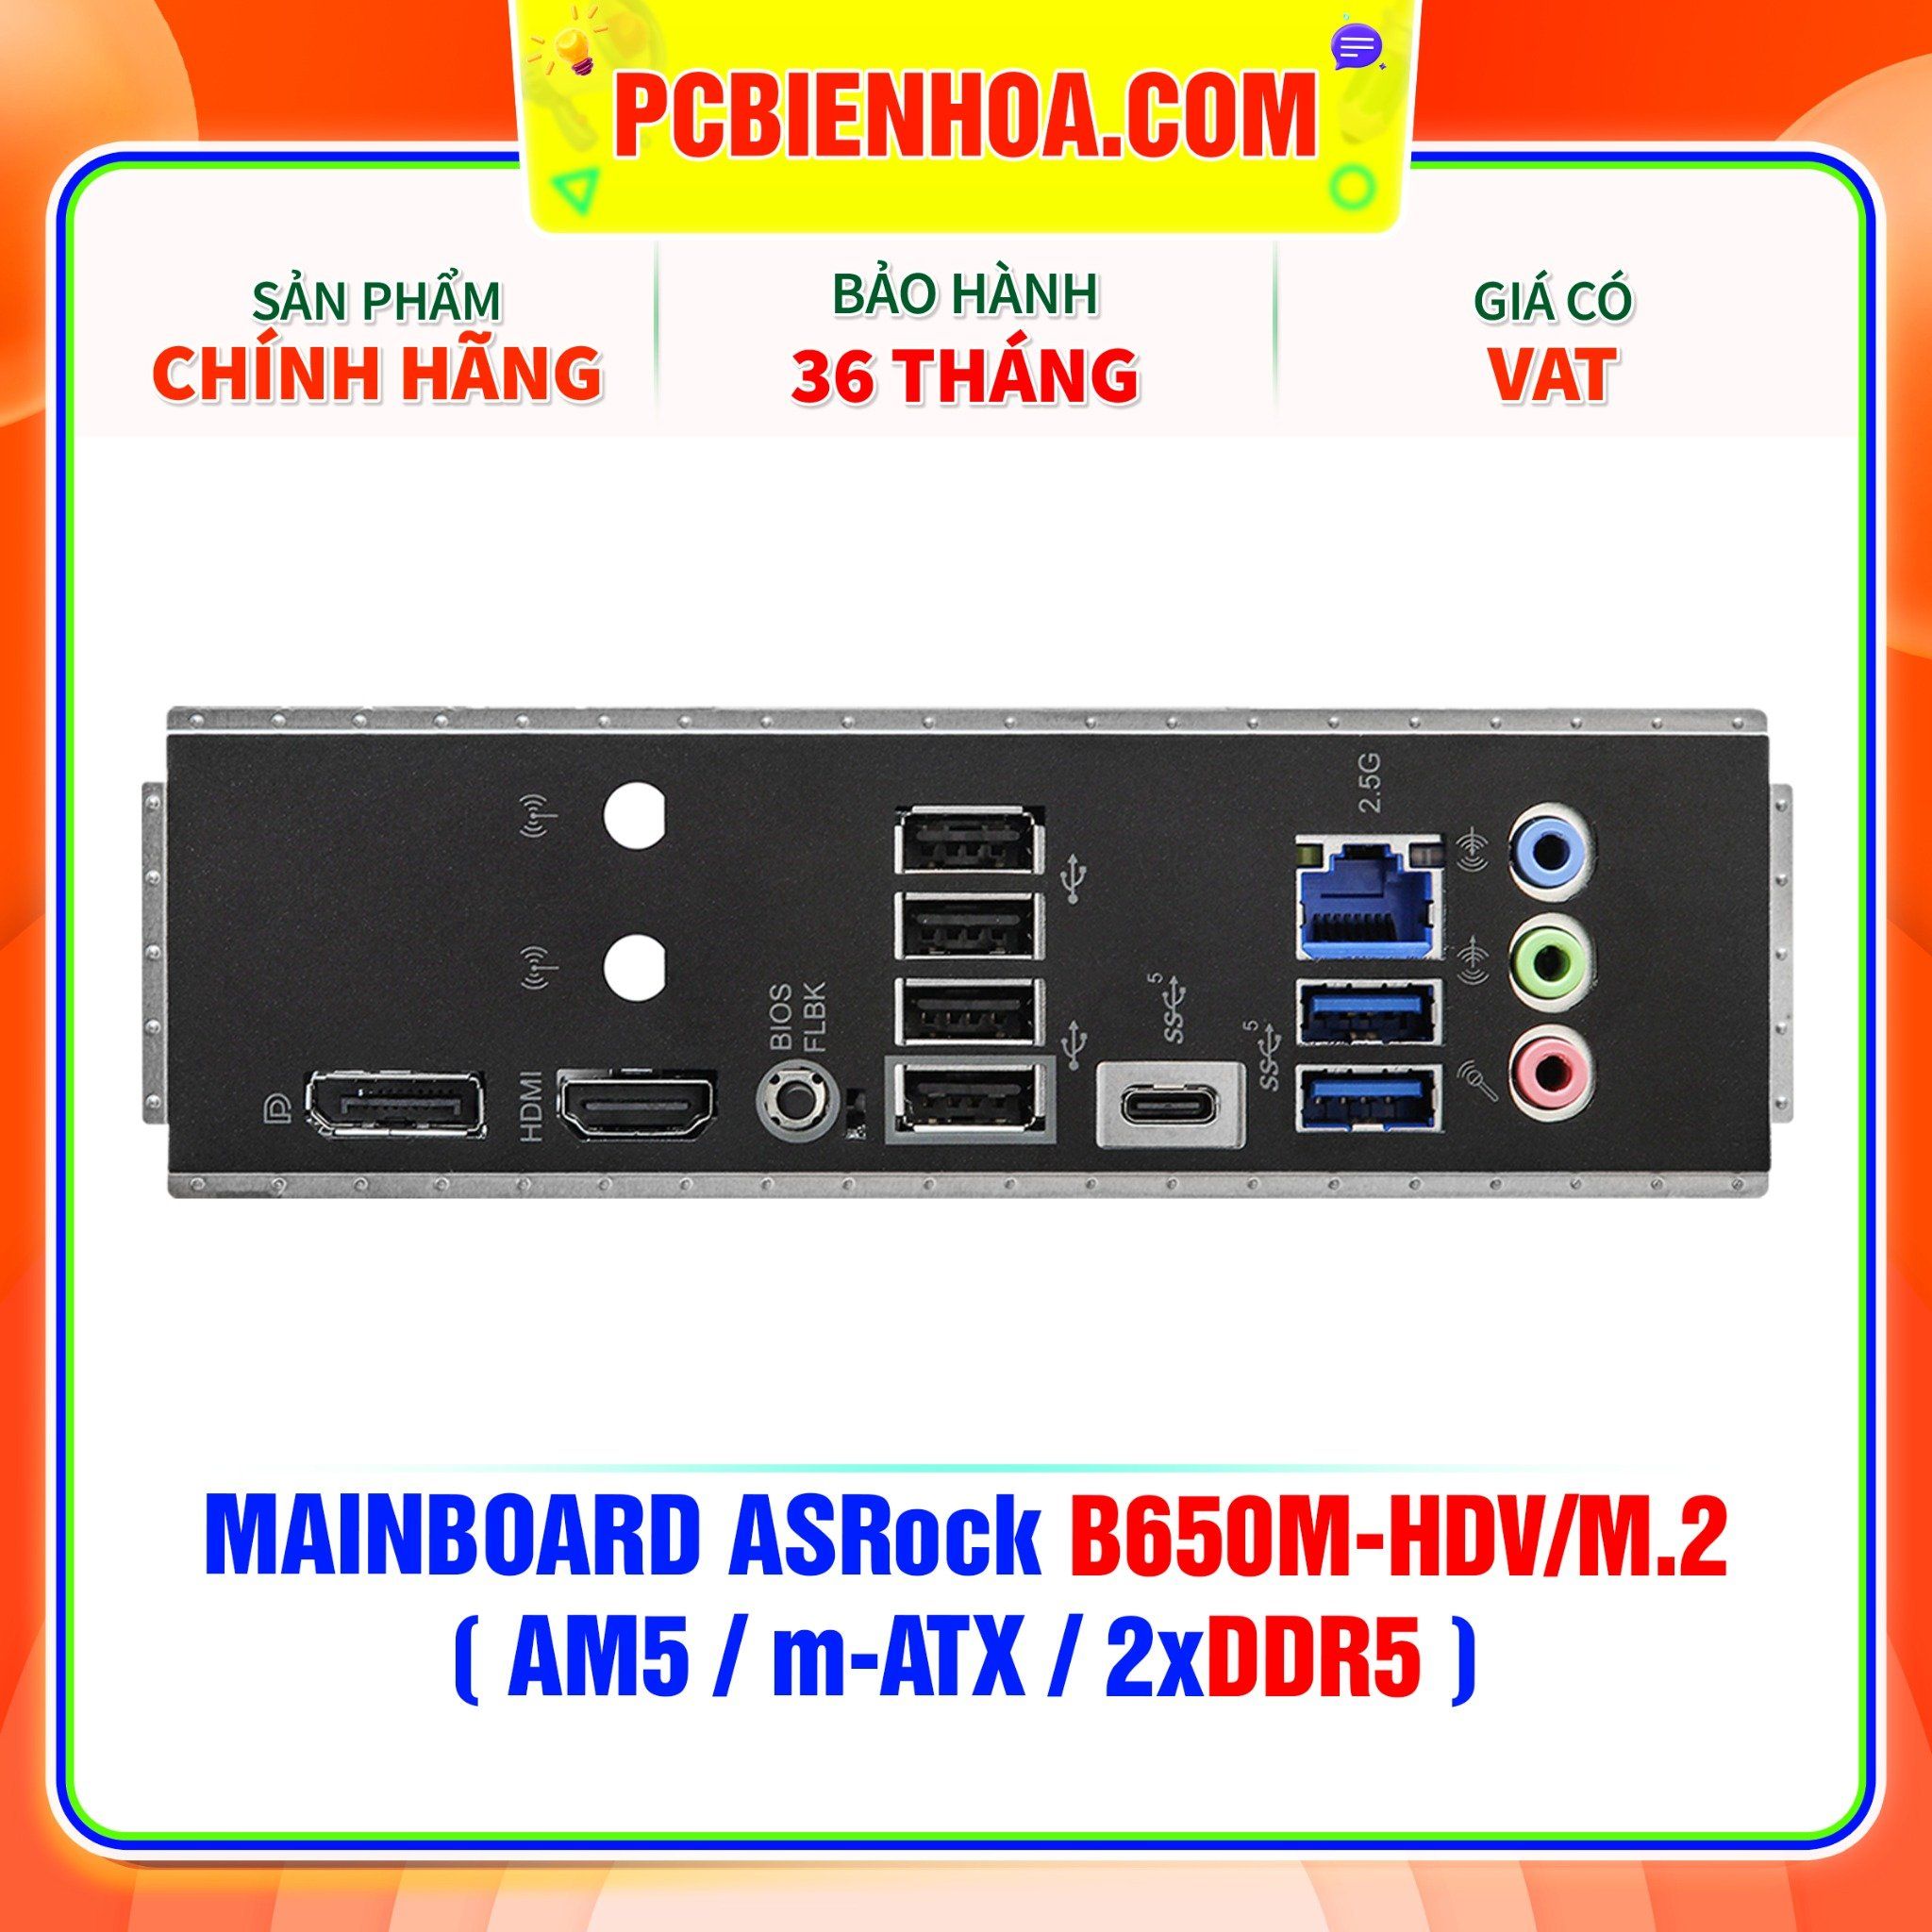  DDR5 - MAINBOARD ASRock B650M-HDV/M.2 ( AM5 / m-ATX / 2xDDR5 ) 